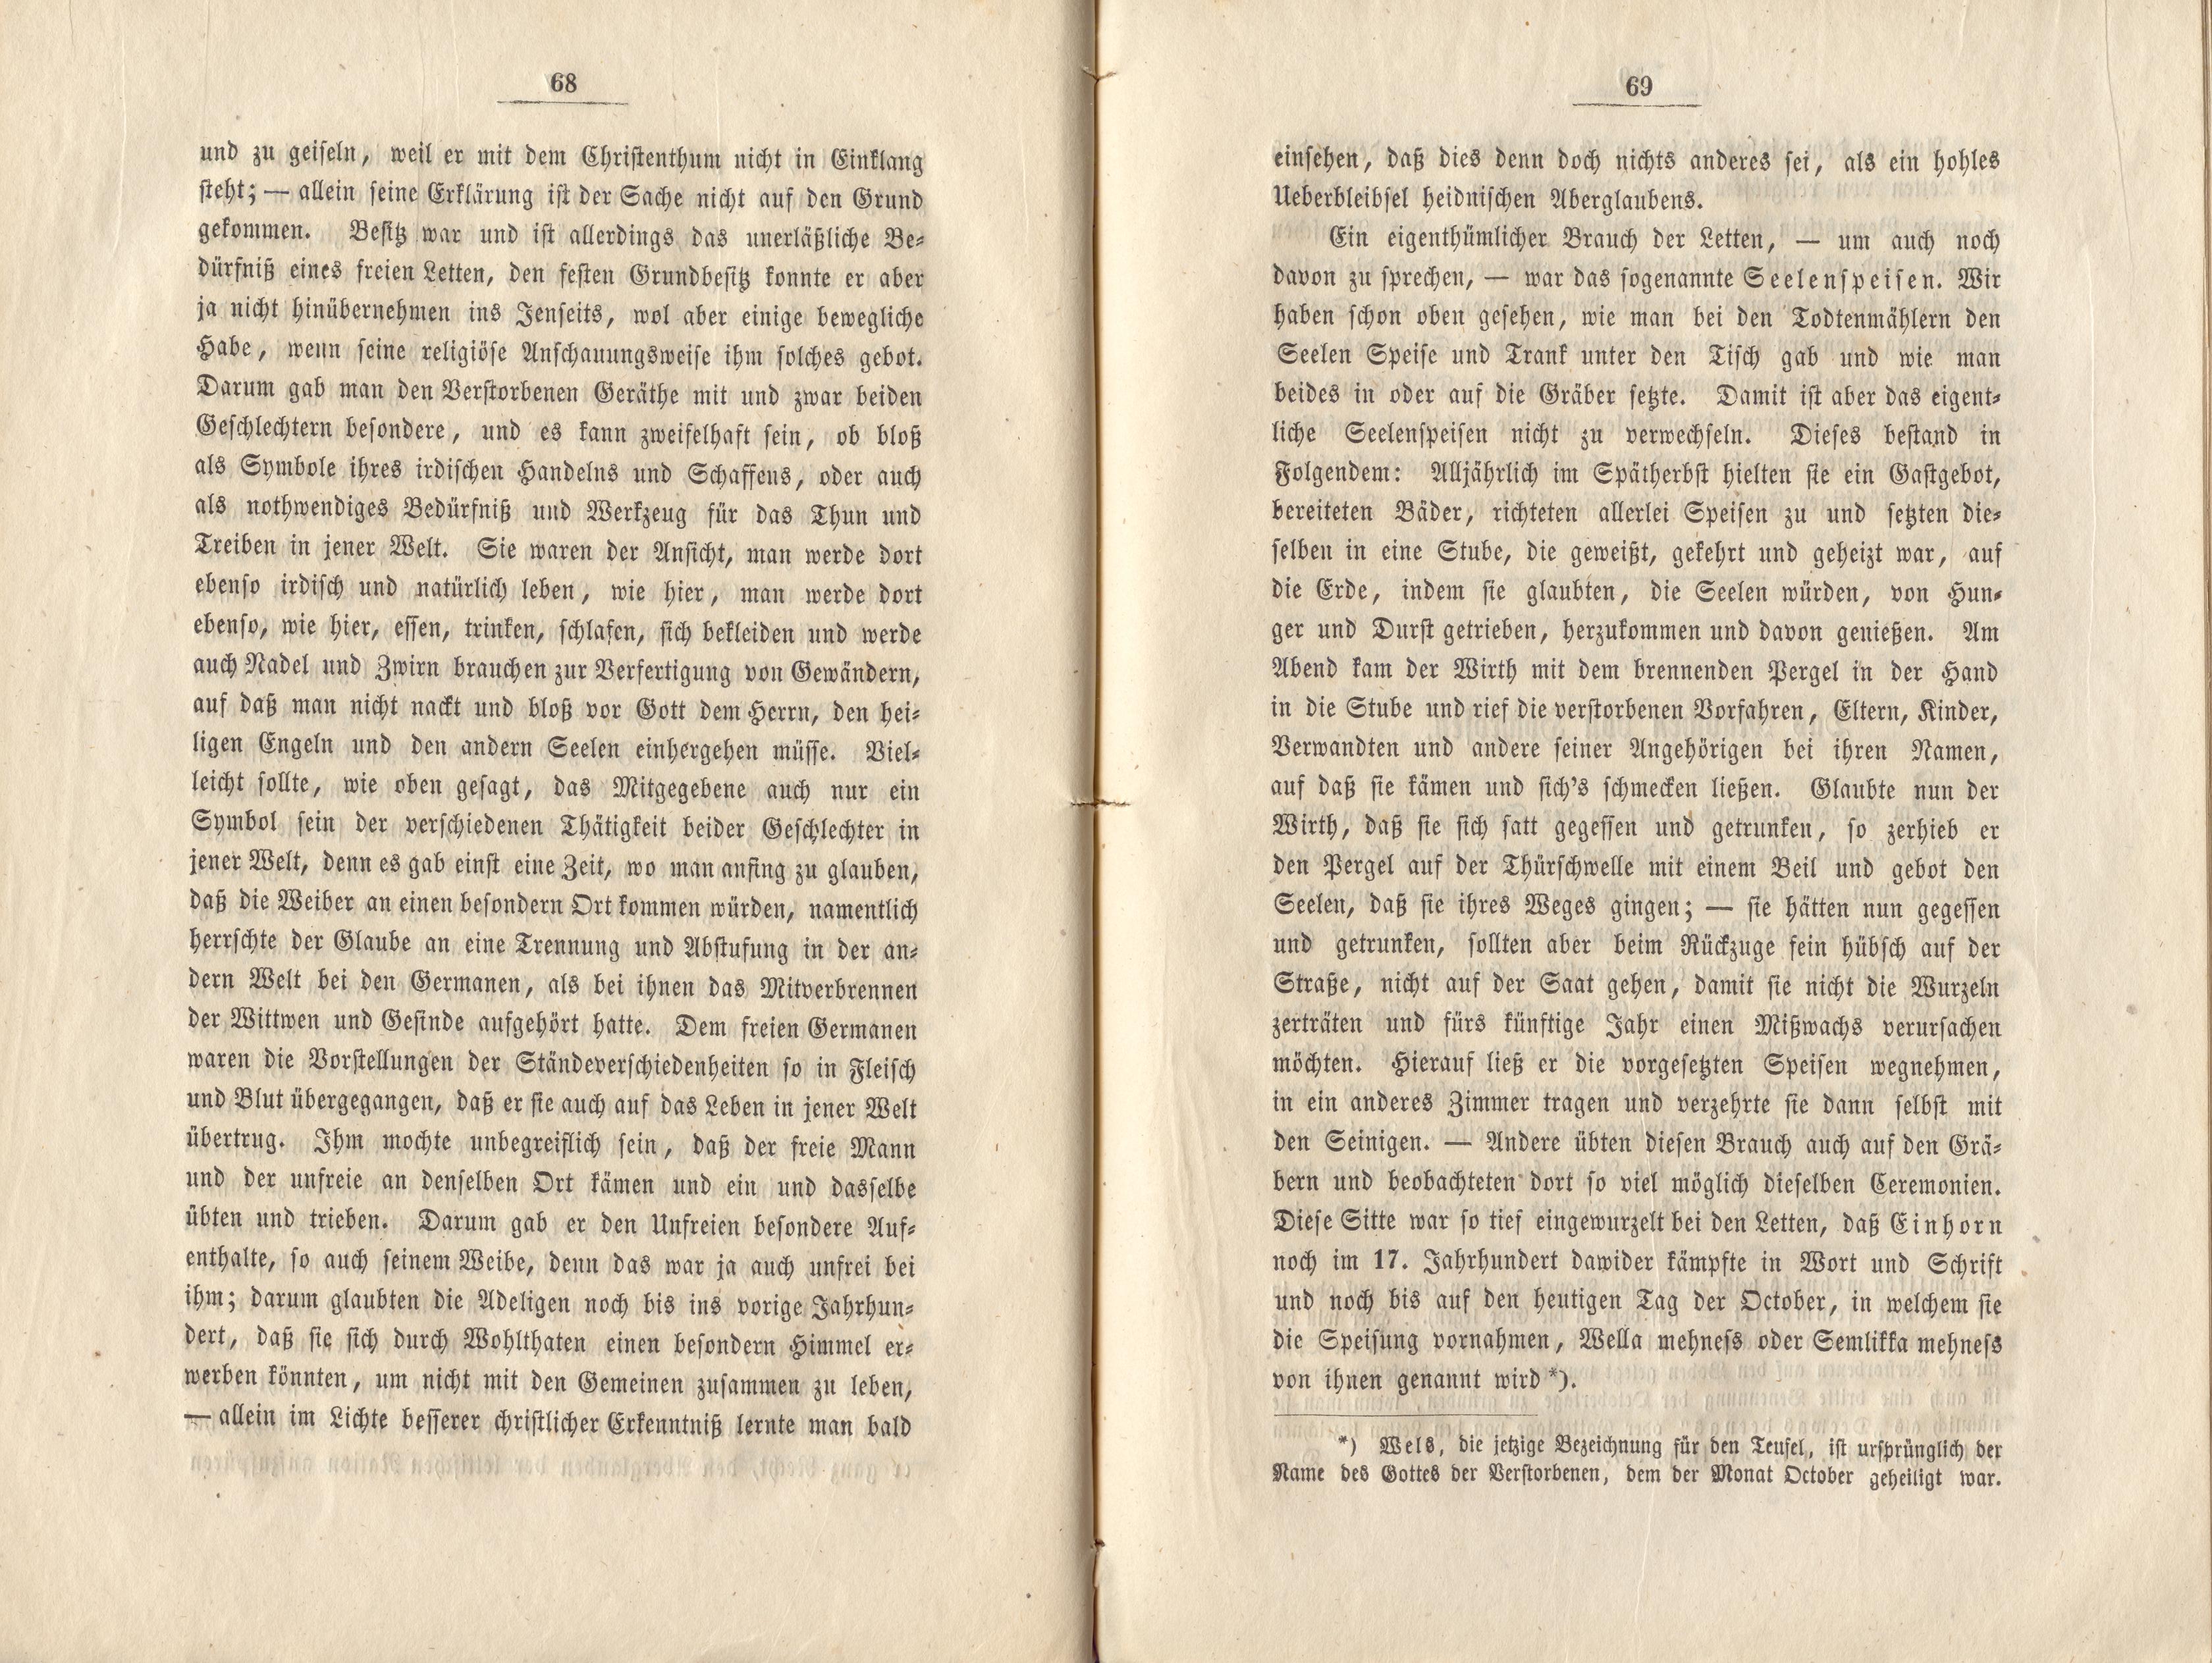 Felliner Blätter (1859) | 35. (68-69) Main body of text